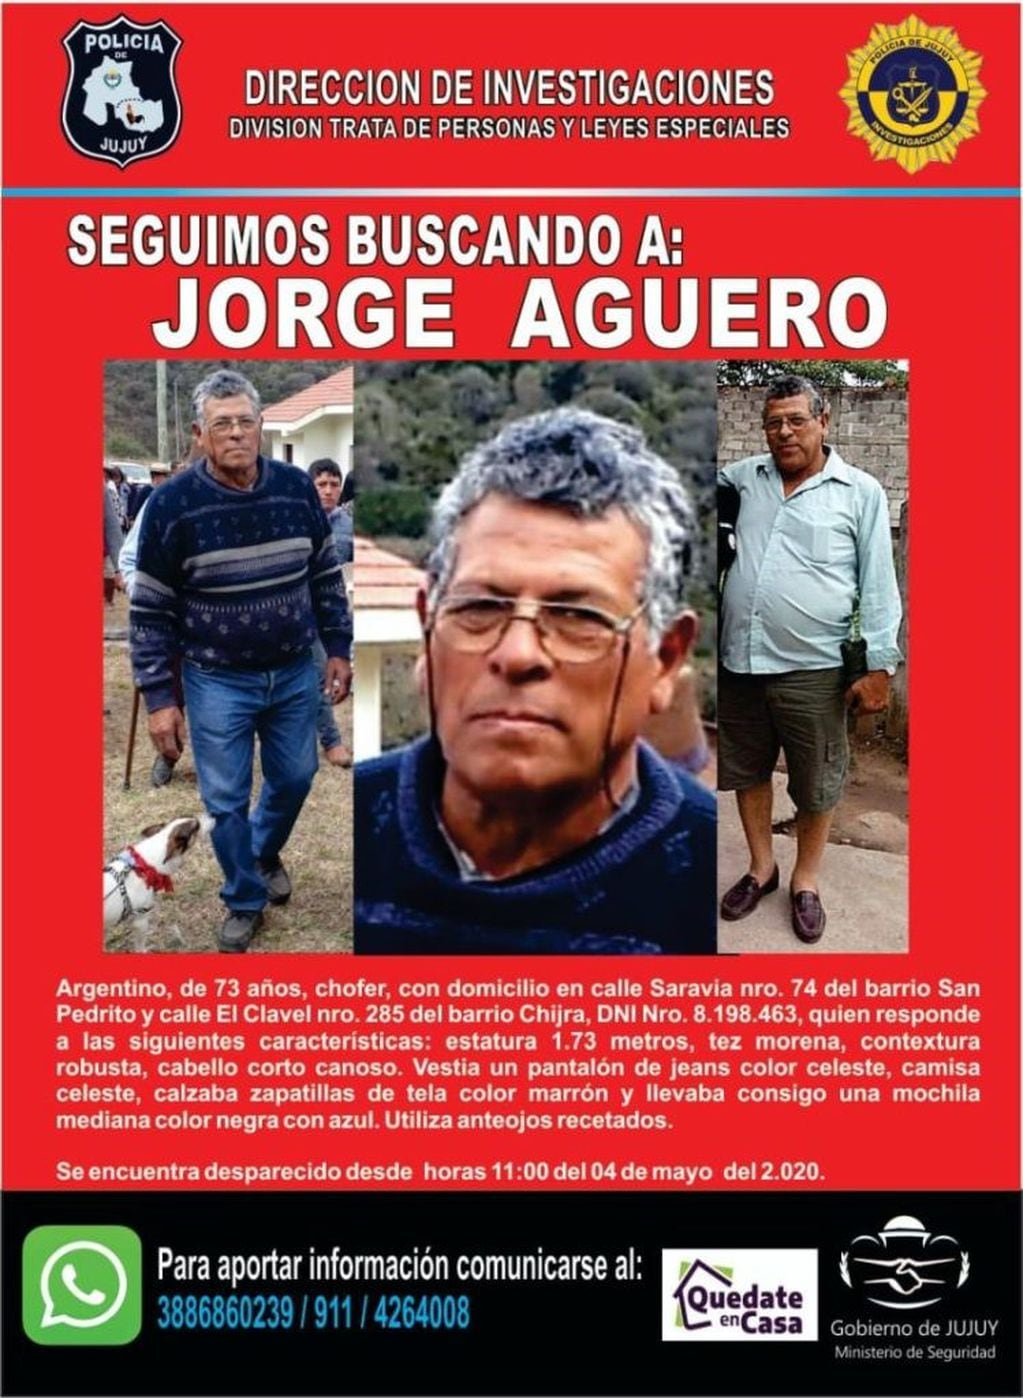 La Policía de Jujuy emitió un alerta de búsqueda de Jorge Agüero, quien está desparecido desde hace 23 días.